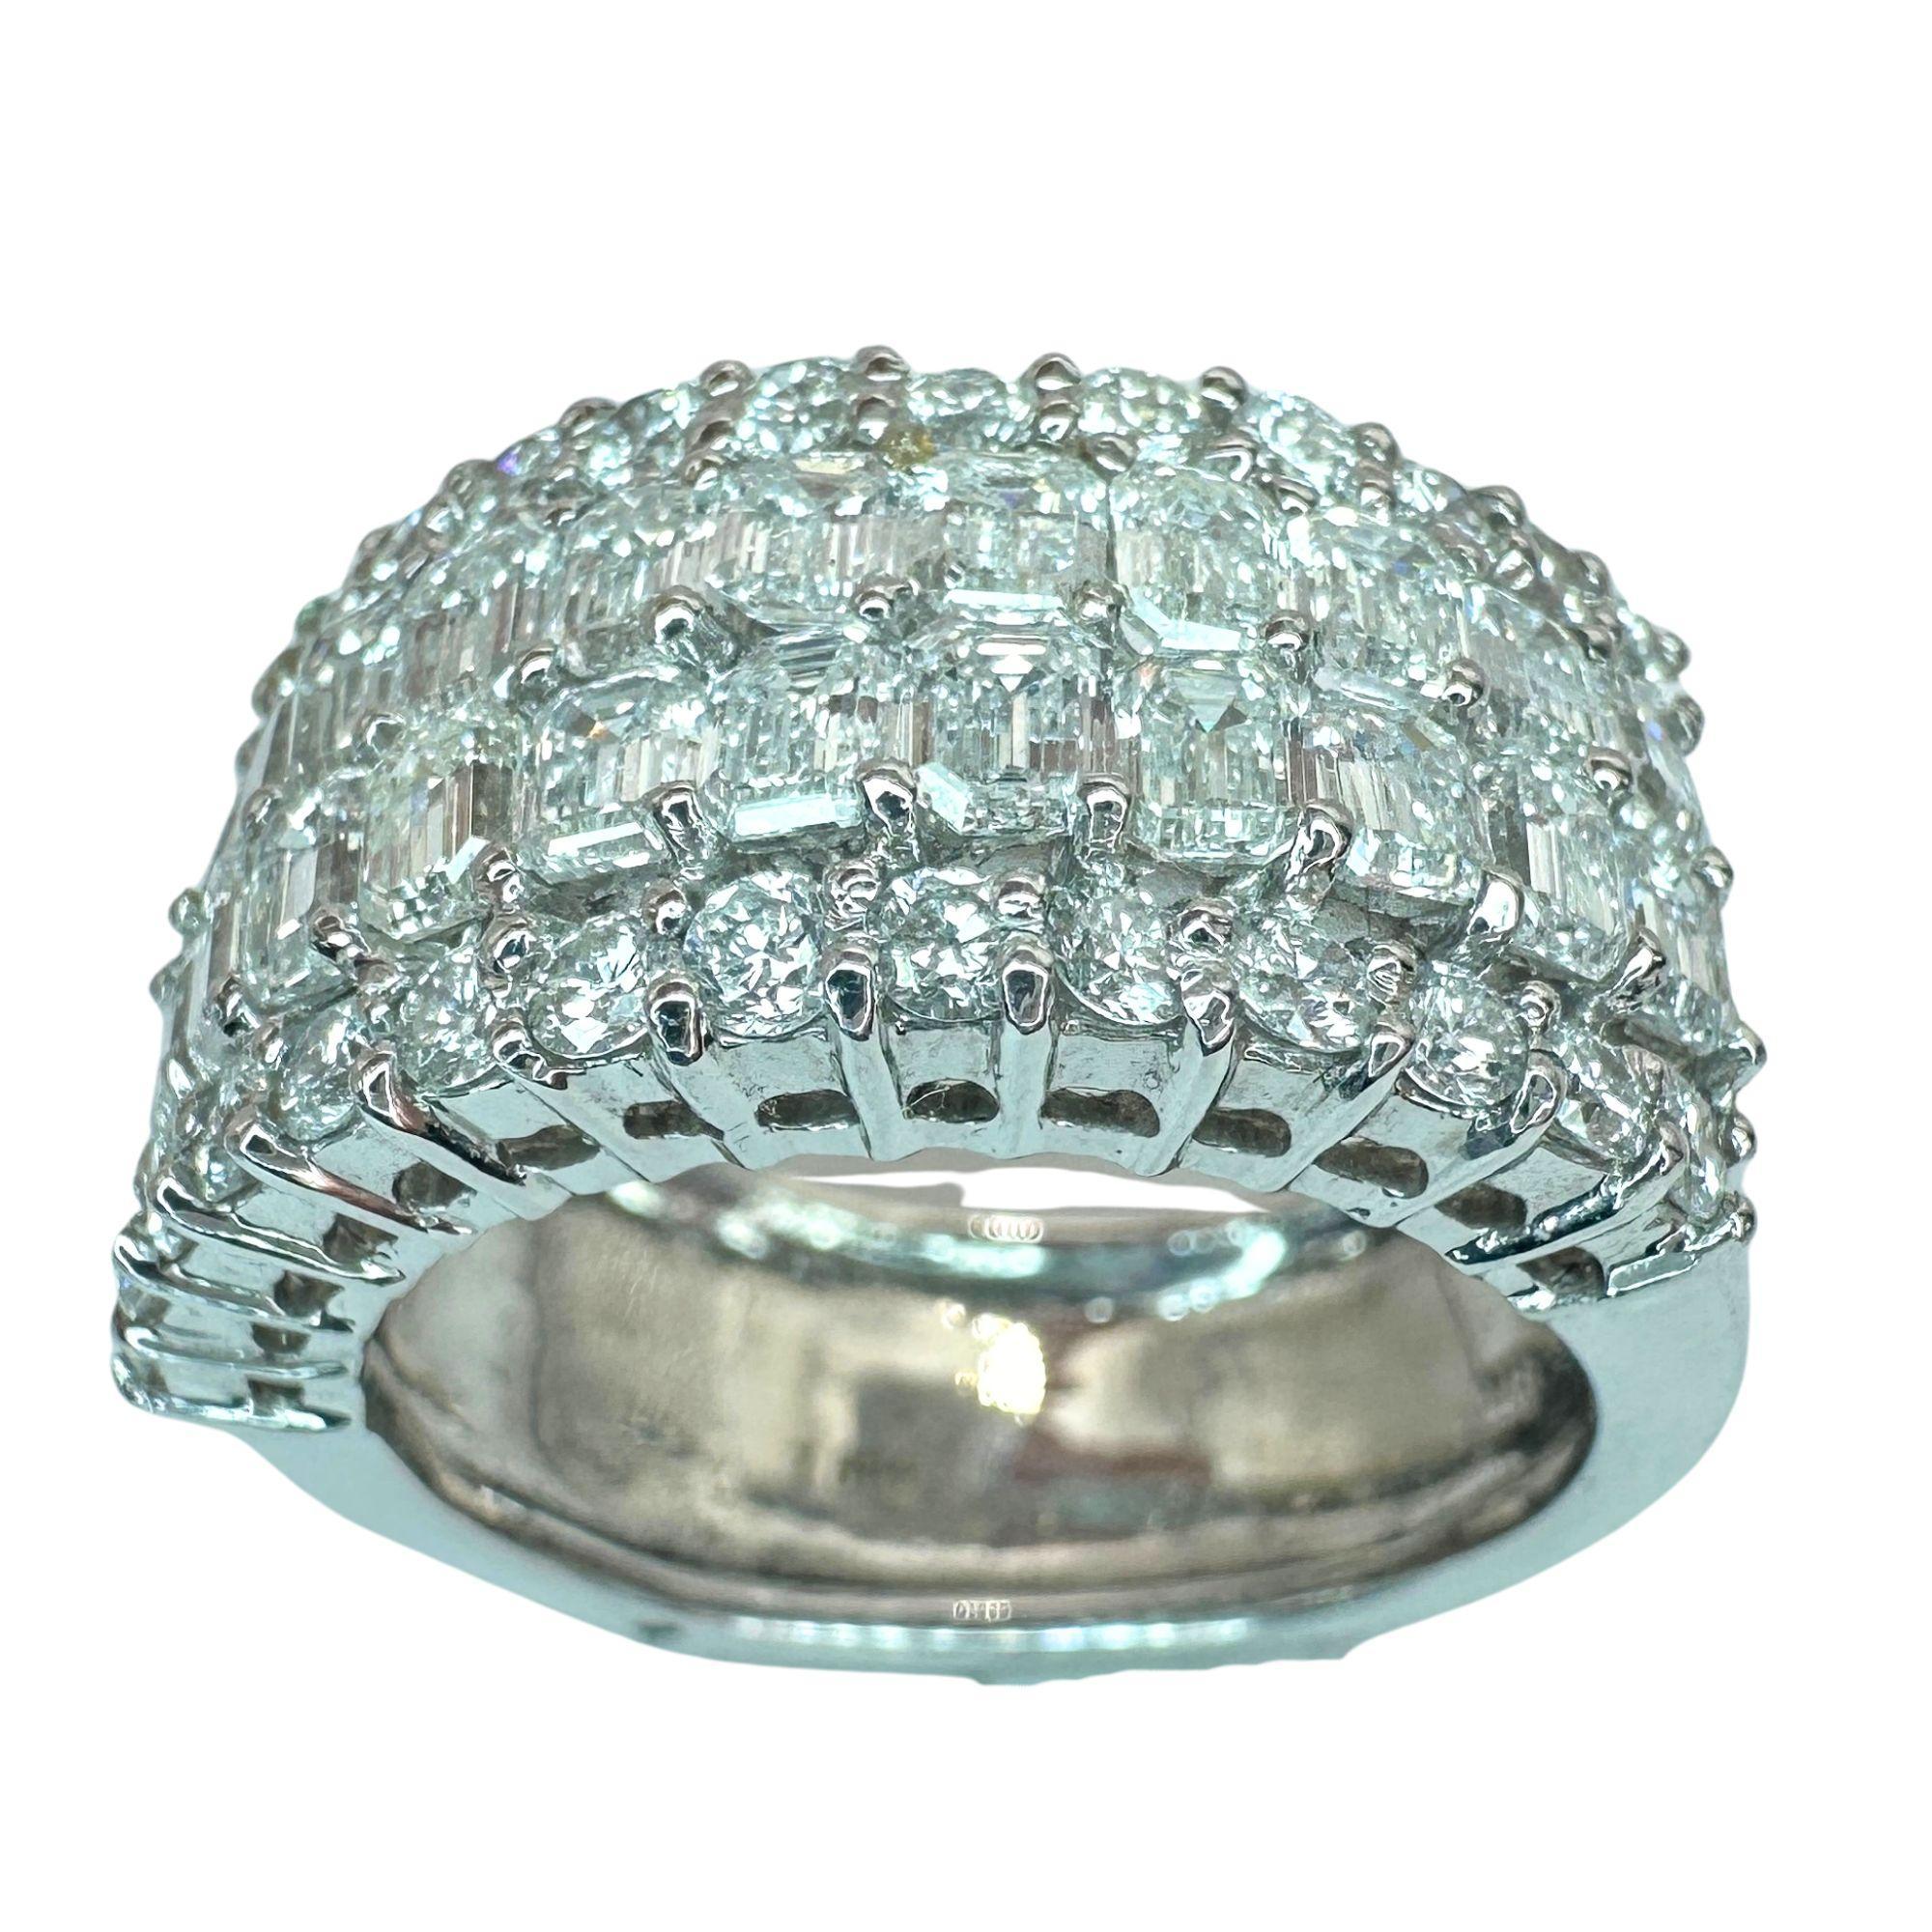 Erhöhen Sie Ihren Stil und glänzen Sie mit diesem atemberaubenden 18k Emerald Cut Diamond Wide Band Ring. Dieser Ring aus 18 Karat Weißgold besteht aus 2,41 Karat Diamanten im Smaragdschliff und 0,65 Karat Diamantakzenten. Der Ring ist in gutem